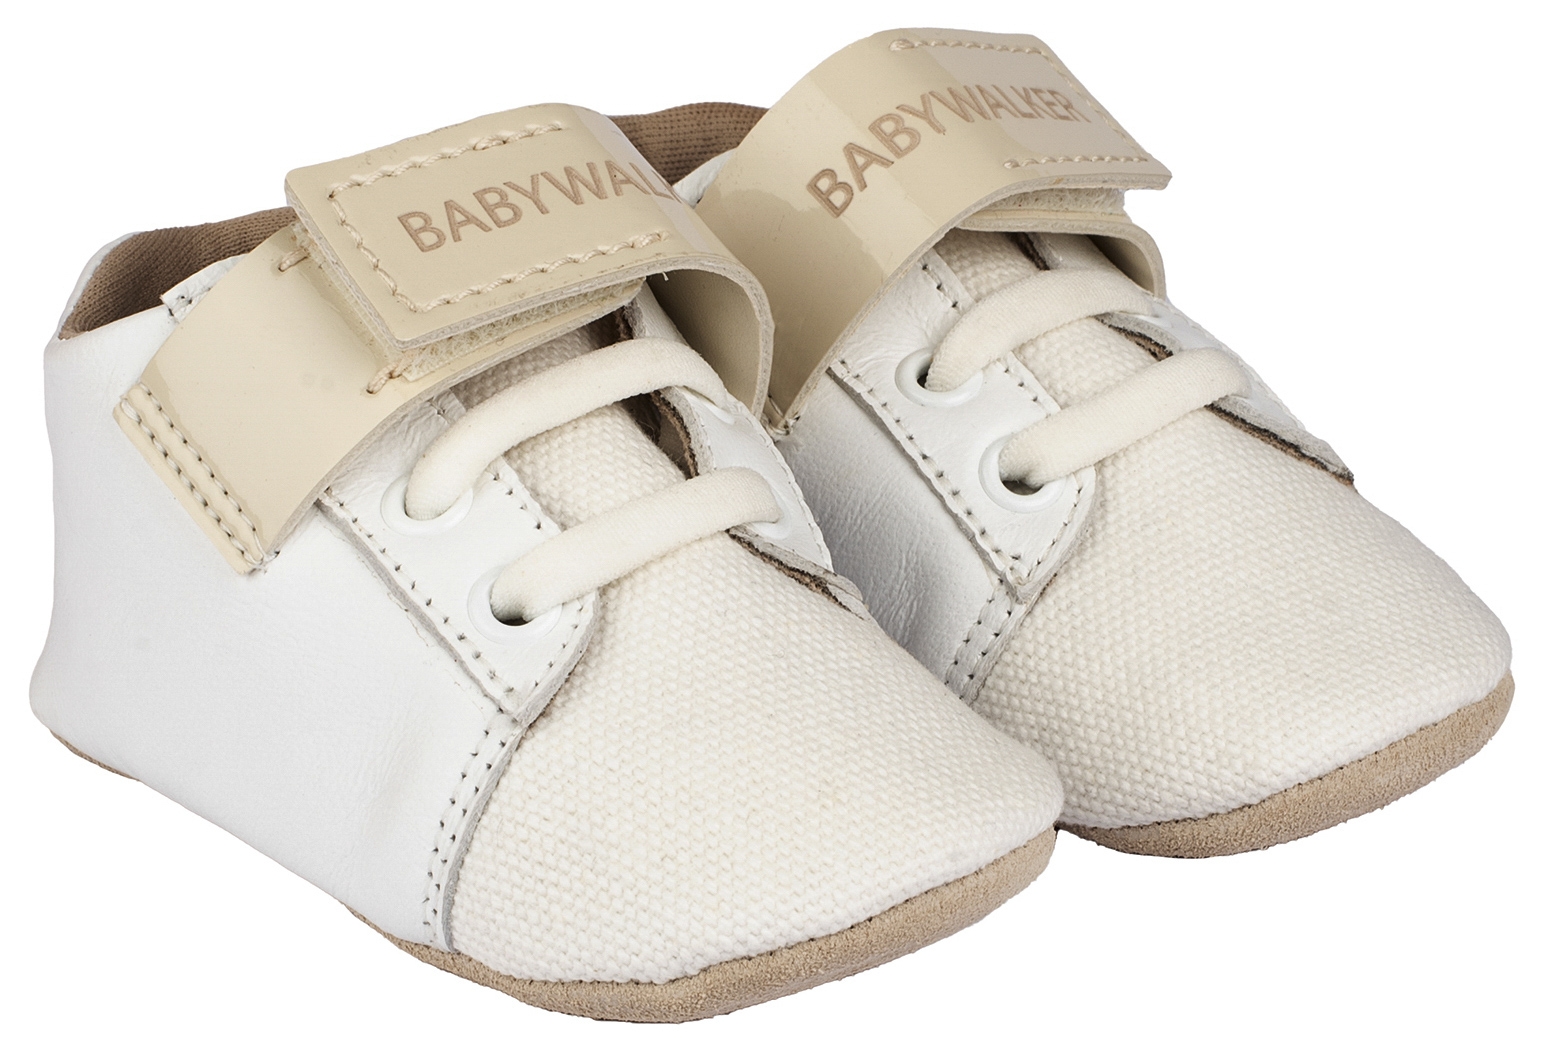 βαπτιστικά παιδικά παπούτσια για αγόρι αγκαλιάς λευκό : 1